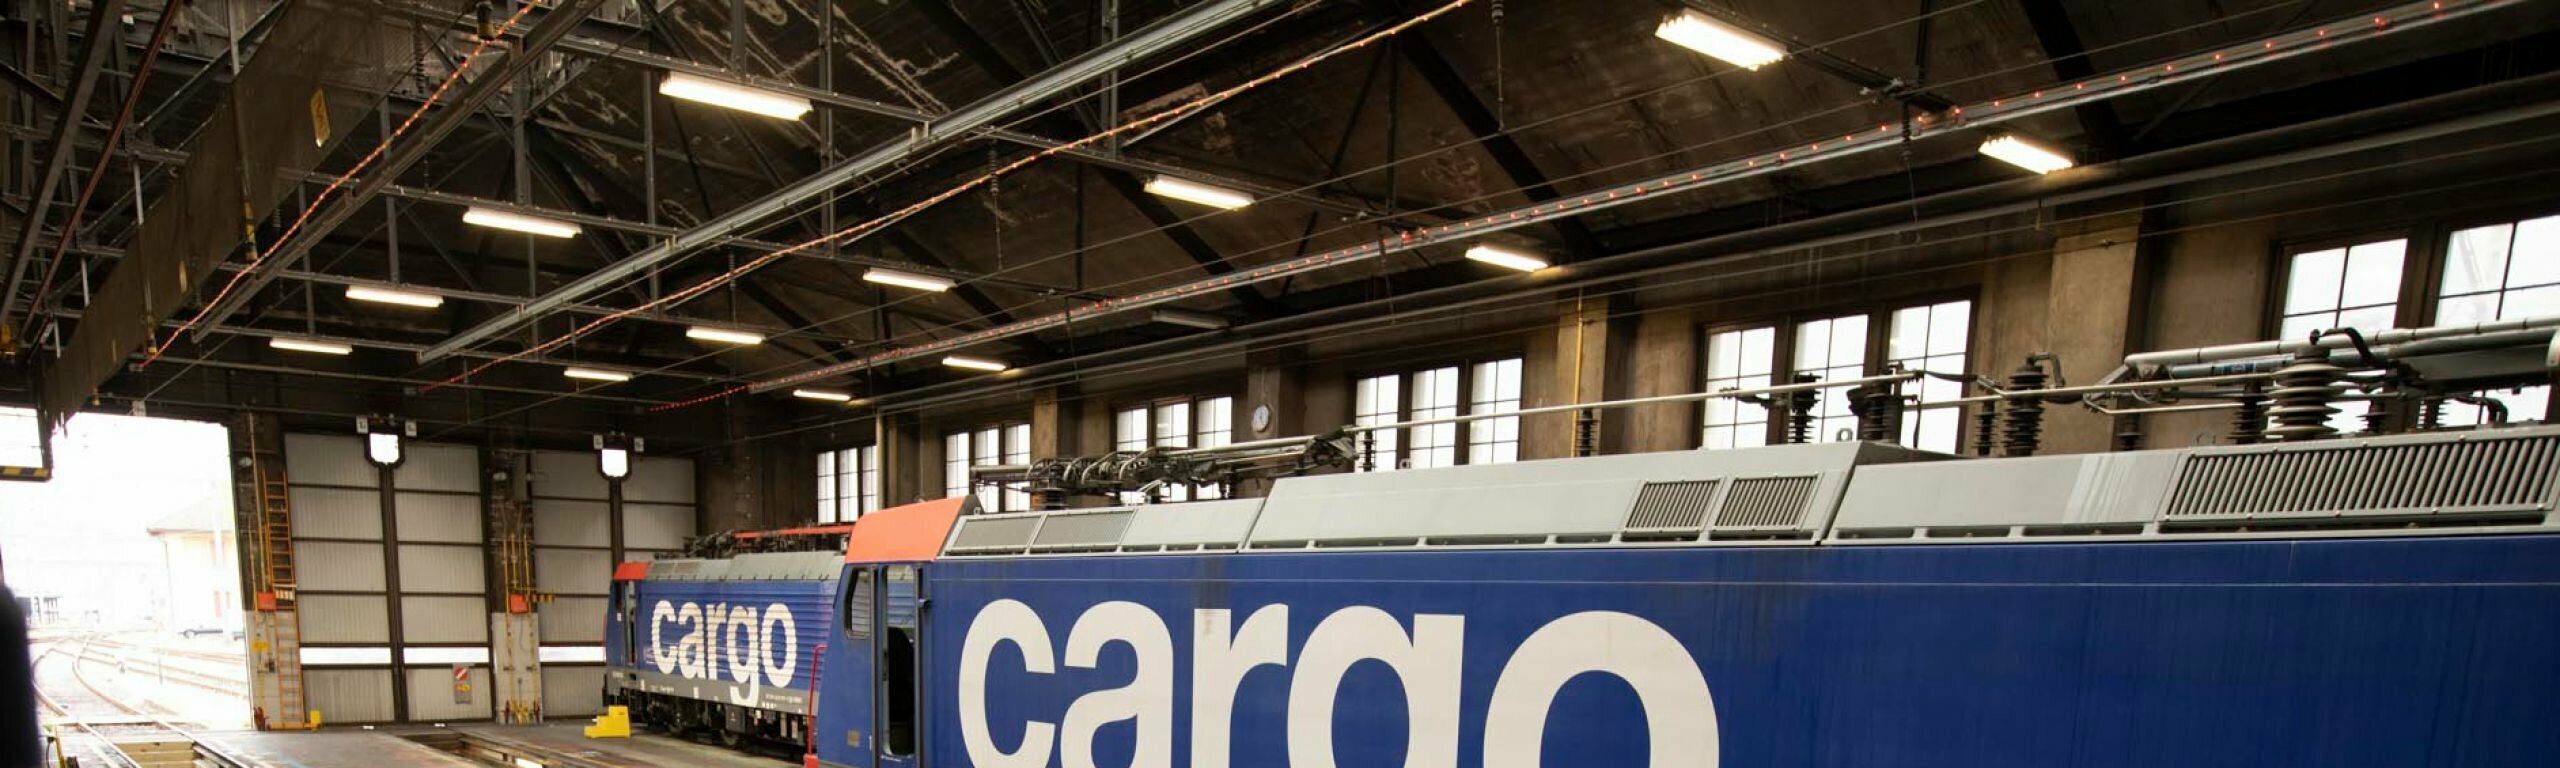 Cargo-Werkstätten in Chiasso werden saniert und ausgebaut